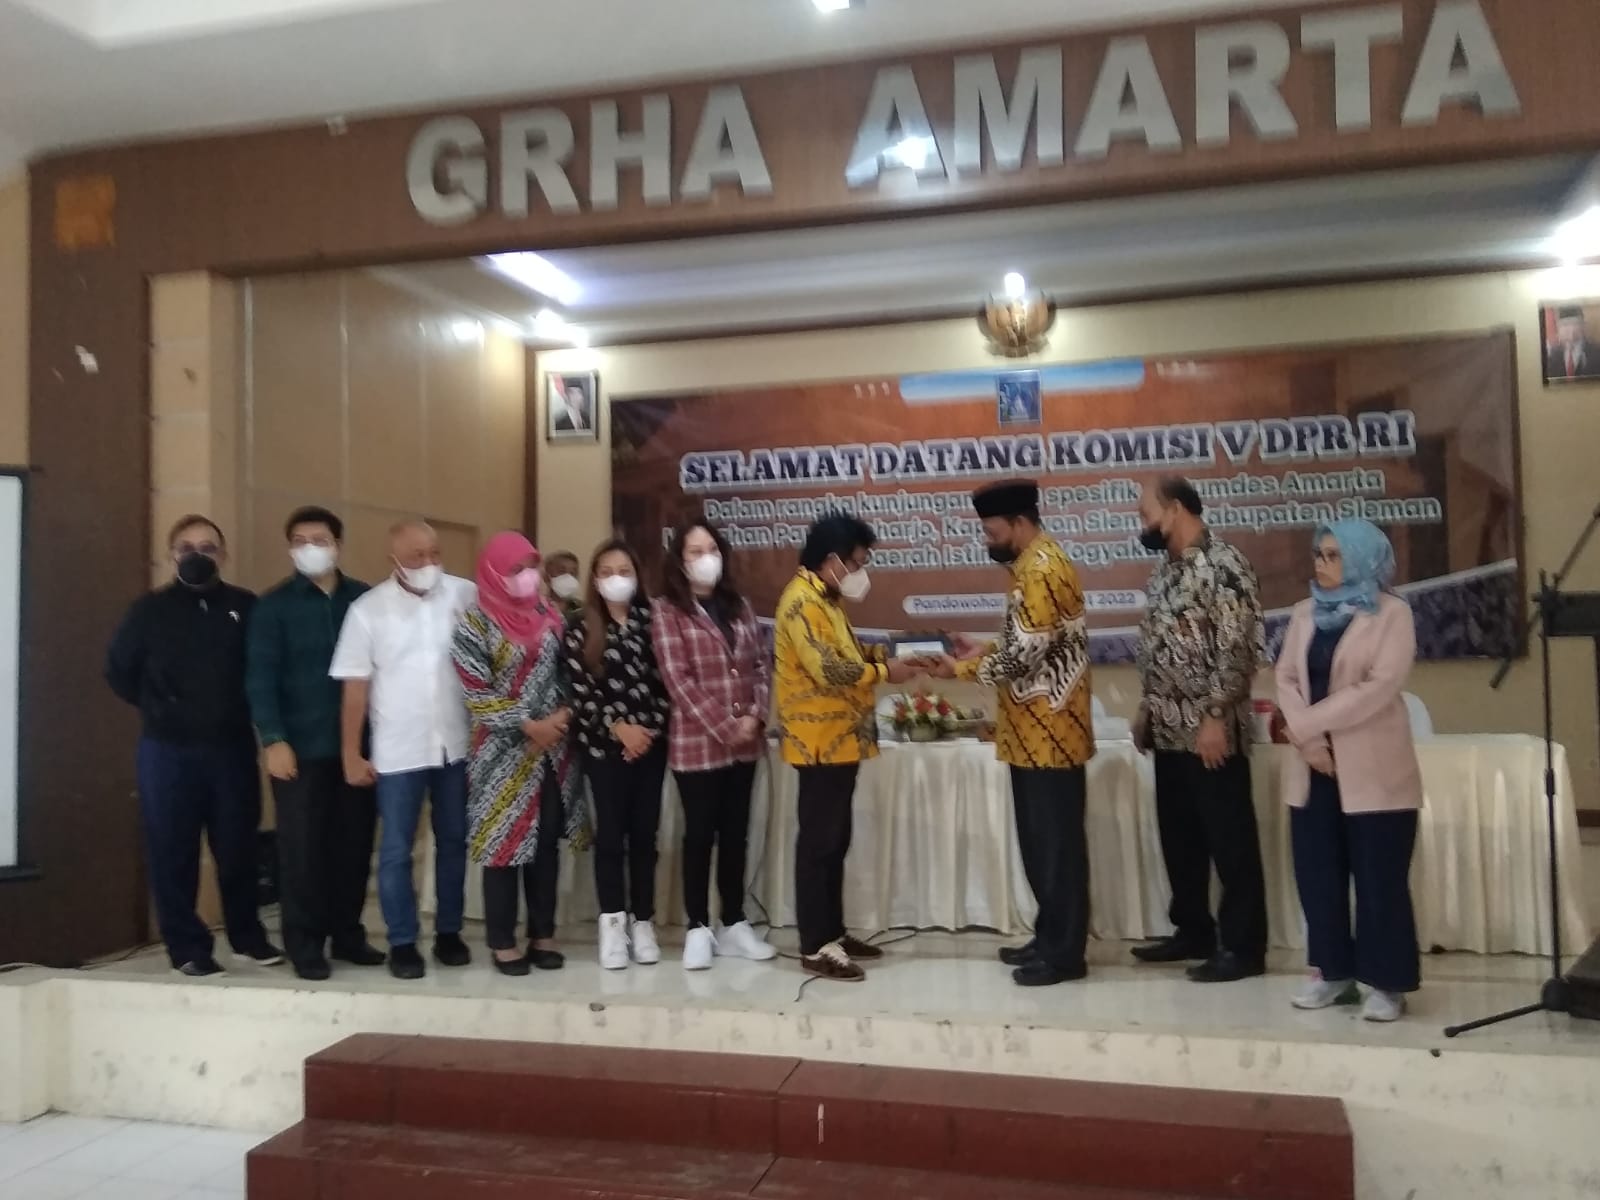 Komisi V DPR RI Kunjungi Amarta, Salah Satu Bumdes Terbaik di  Indonesia